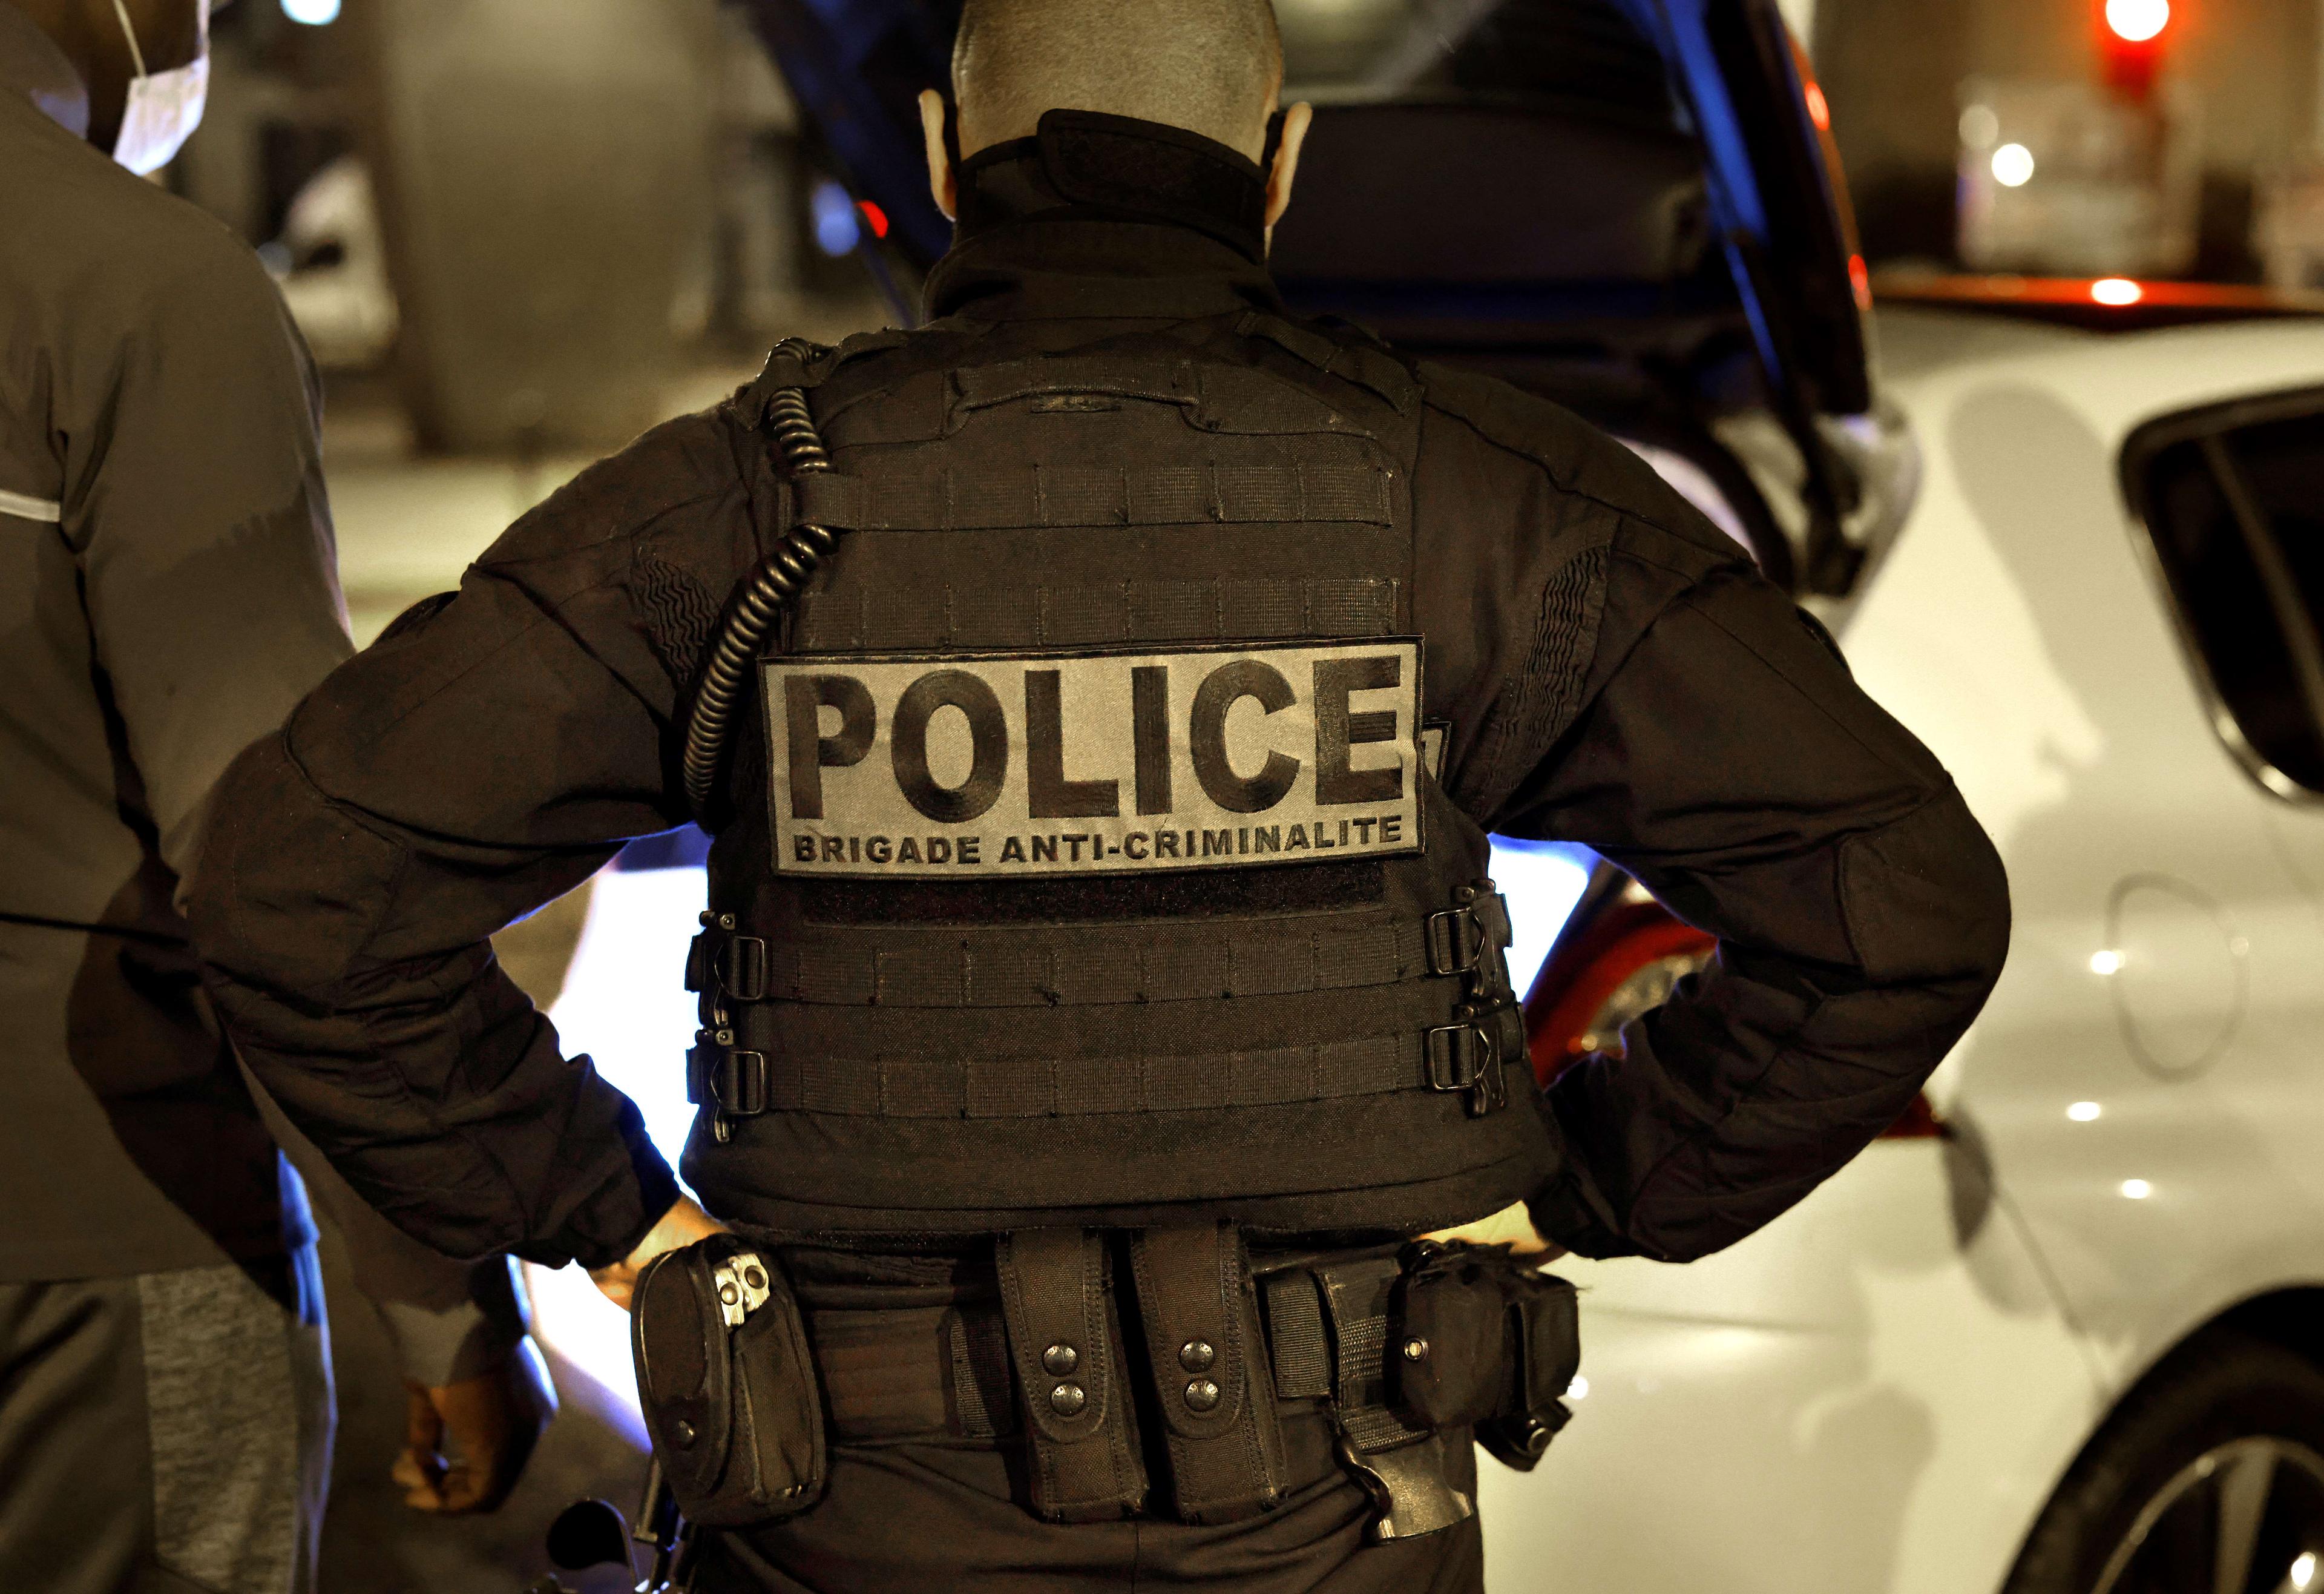 Drygt 4 000 poliser kommer i en insats att sättas in mot de kriminella gängen i Frankrike. Foto: Thomas Coex/AFP via Getty Images